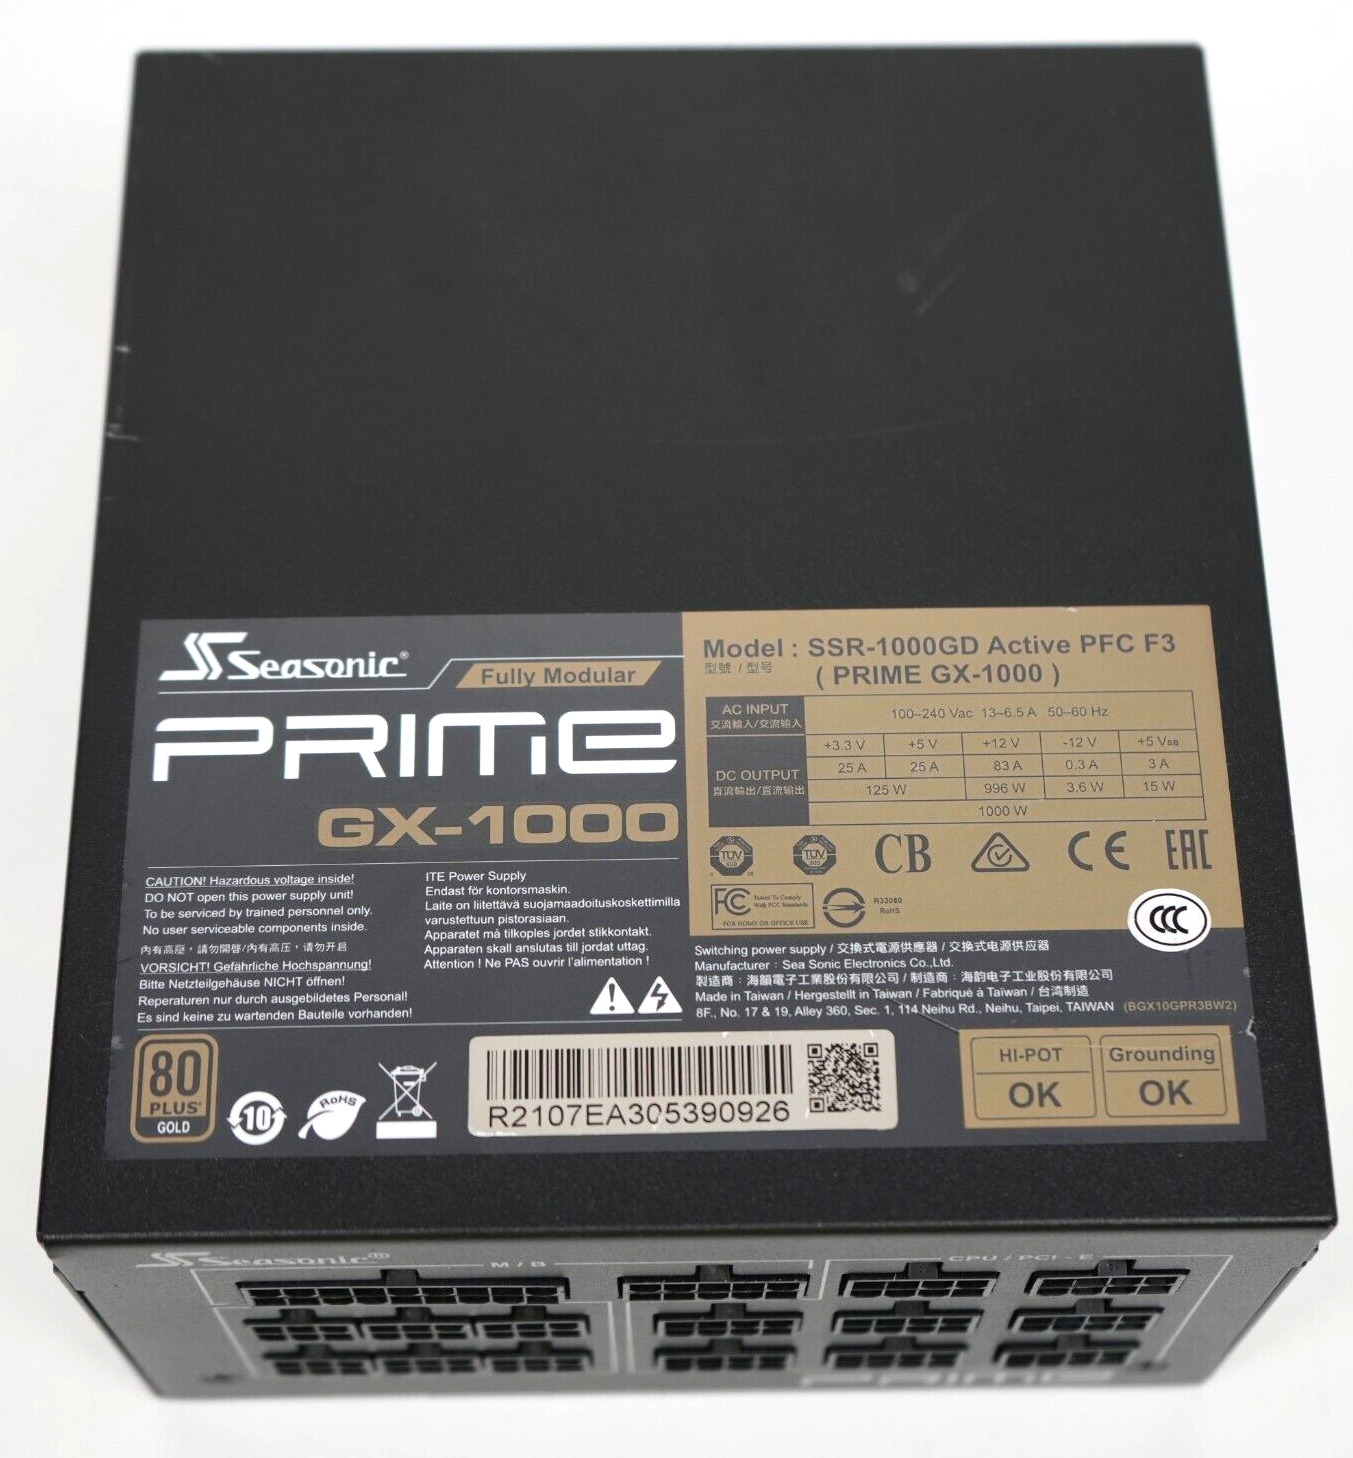 READ* Seasonic Prime GX-1000 80 Plus Gold ATX12V Power Supply- SSR-1000GD